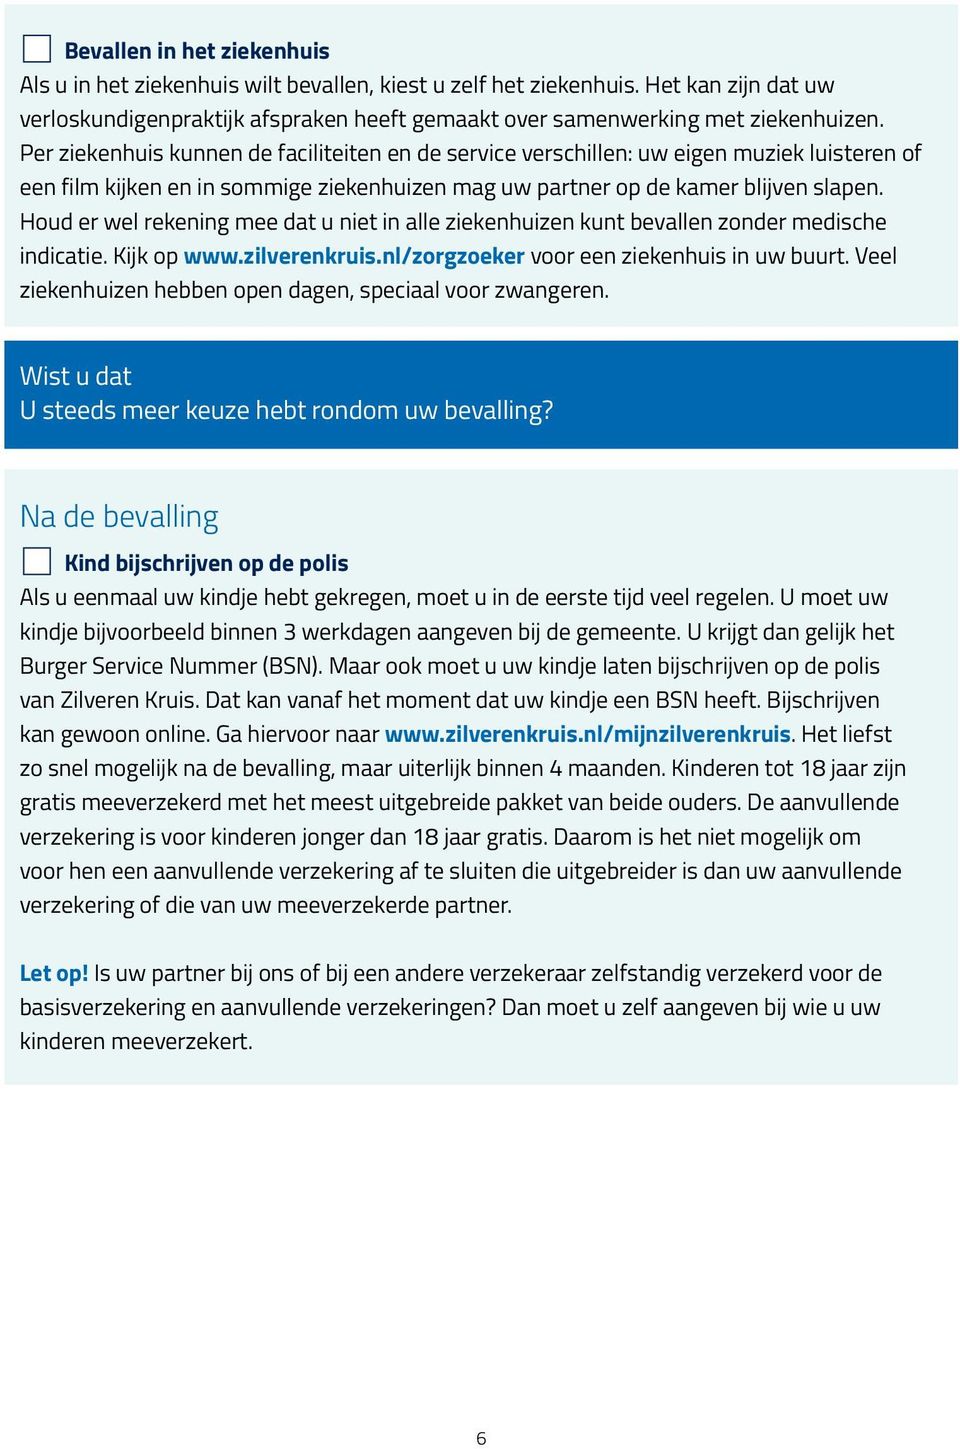 Houd er wel rekening mee dat u niet in alle ziekenhuizen kunt bevallen zonder medische indicatie. Kijk op www.zilverenkruis.nl/zorgzoeker voor een ziekenhuis in uw buurt.